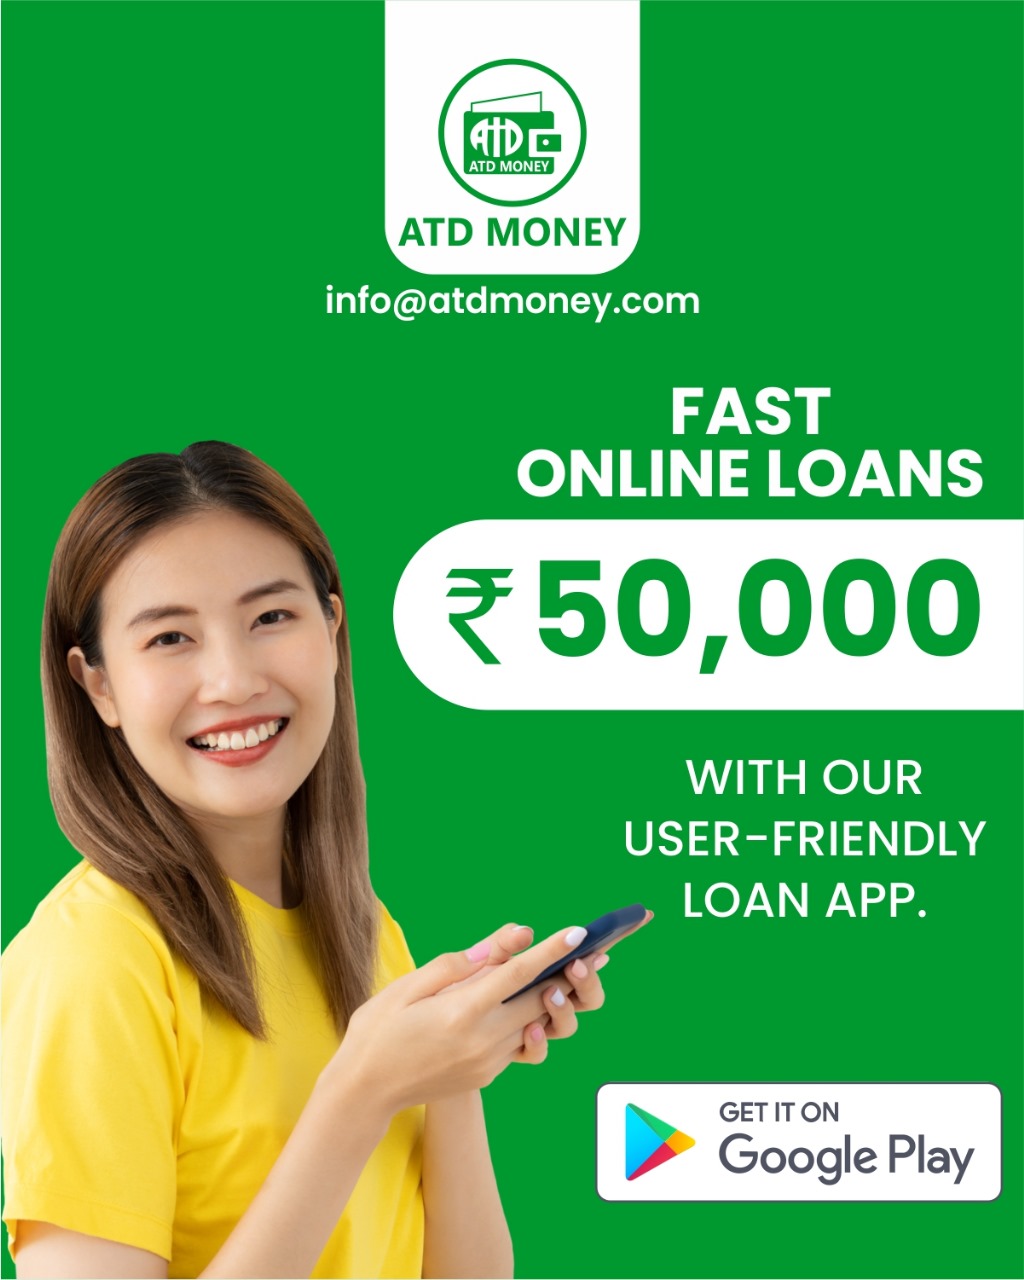 Easy loans - Zip loans - installment loans - quick cash loans in india - mini loan